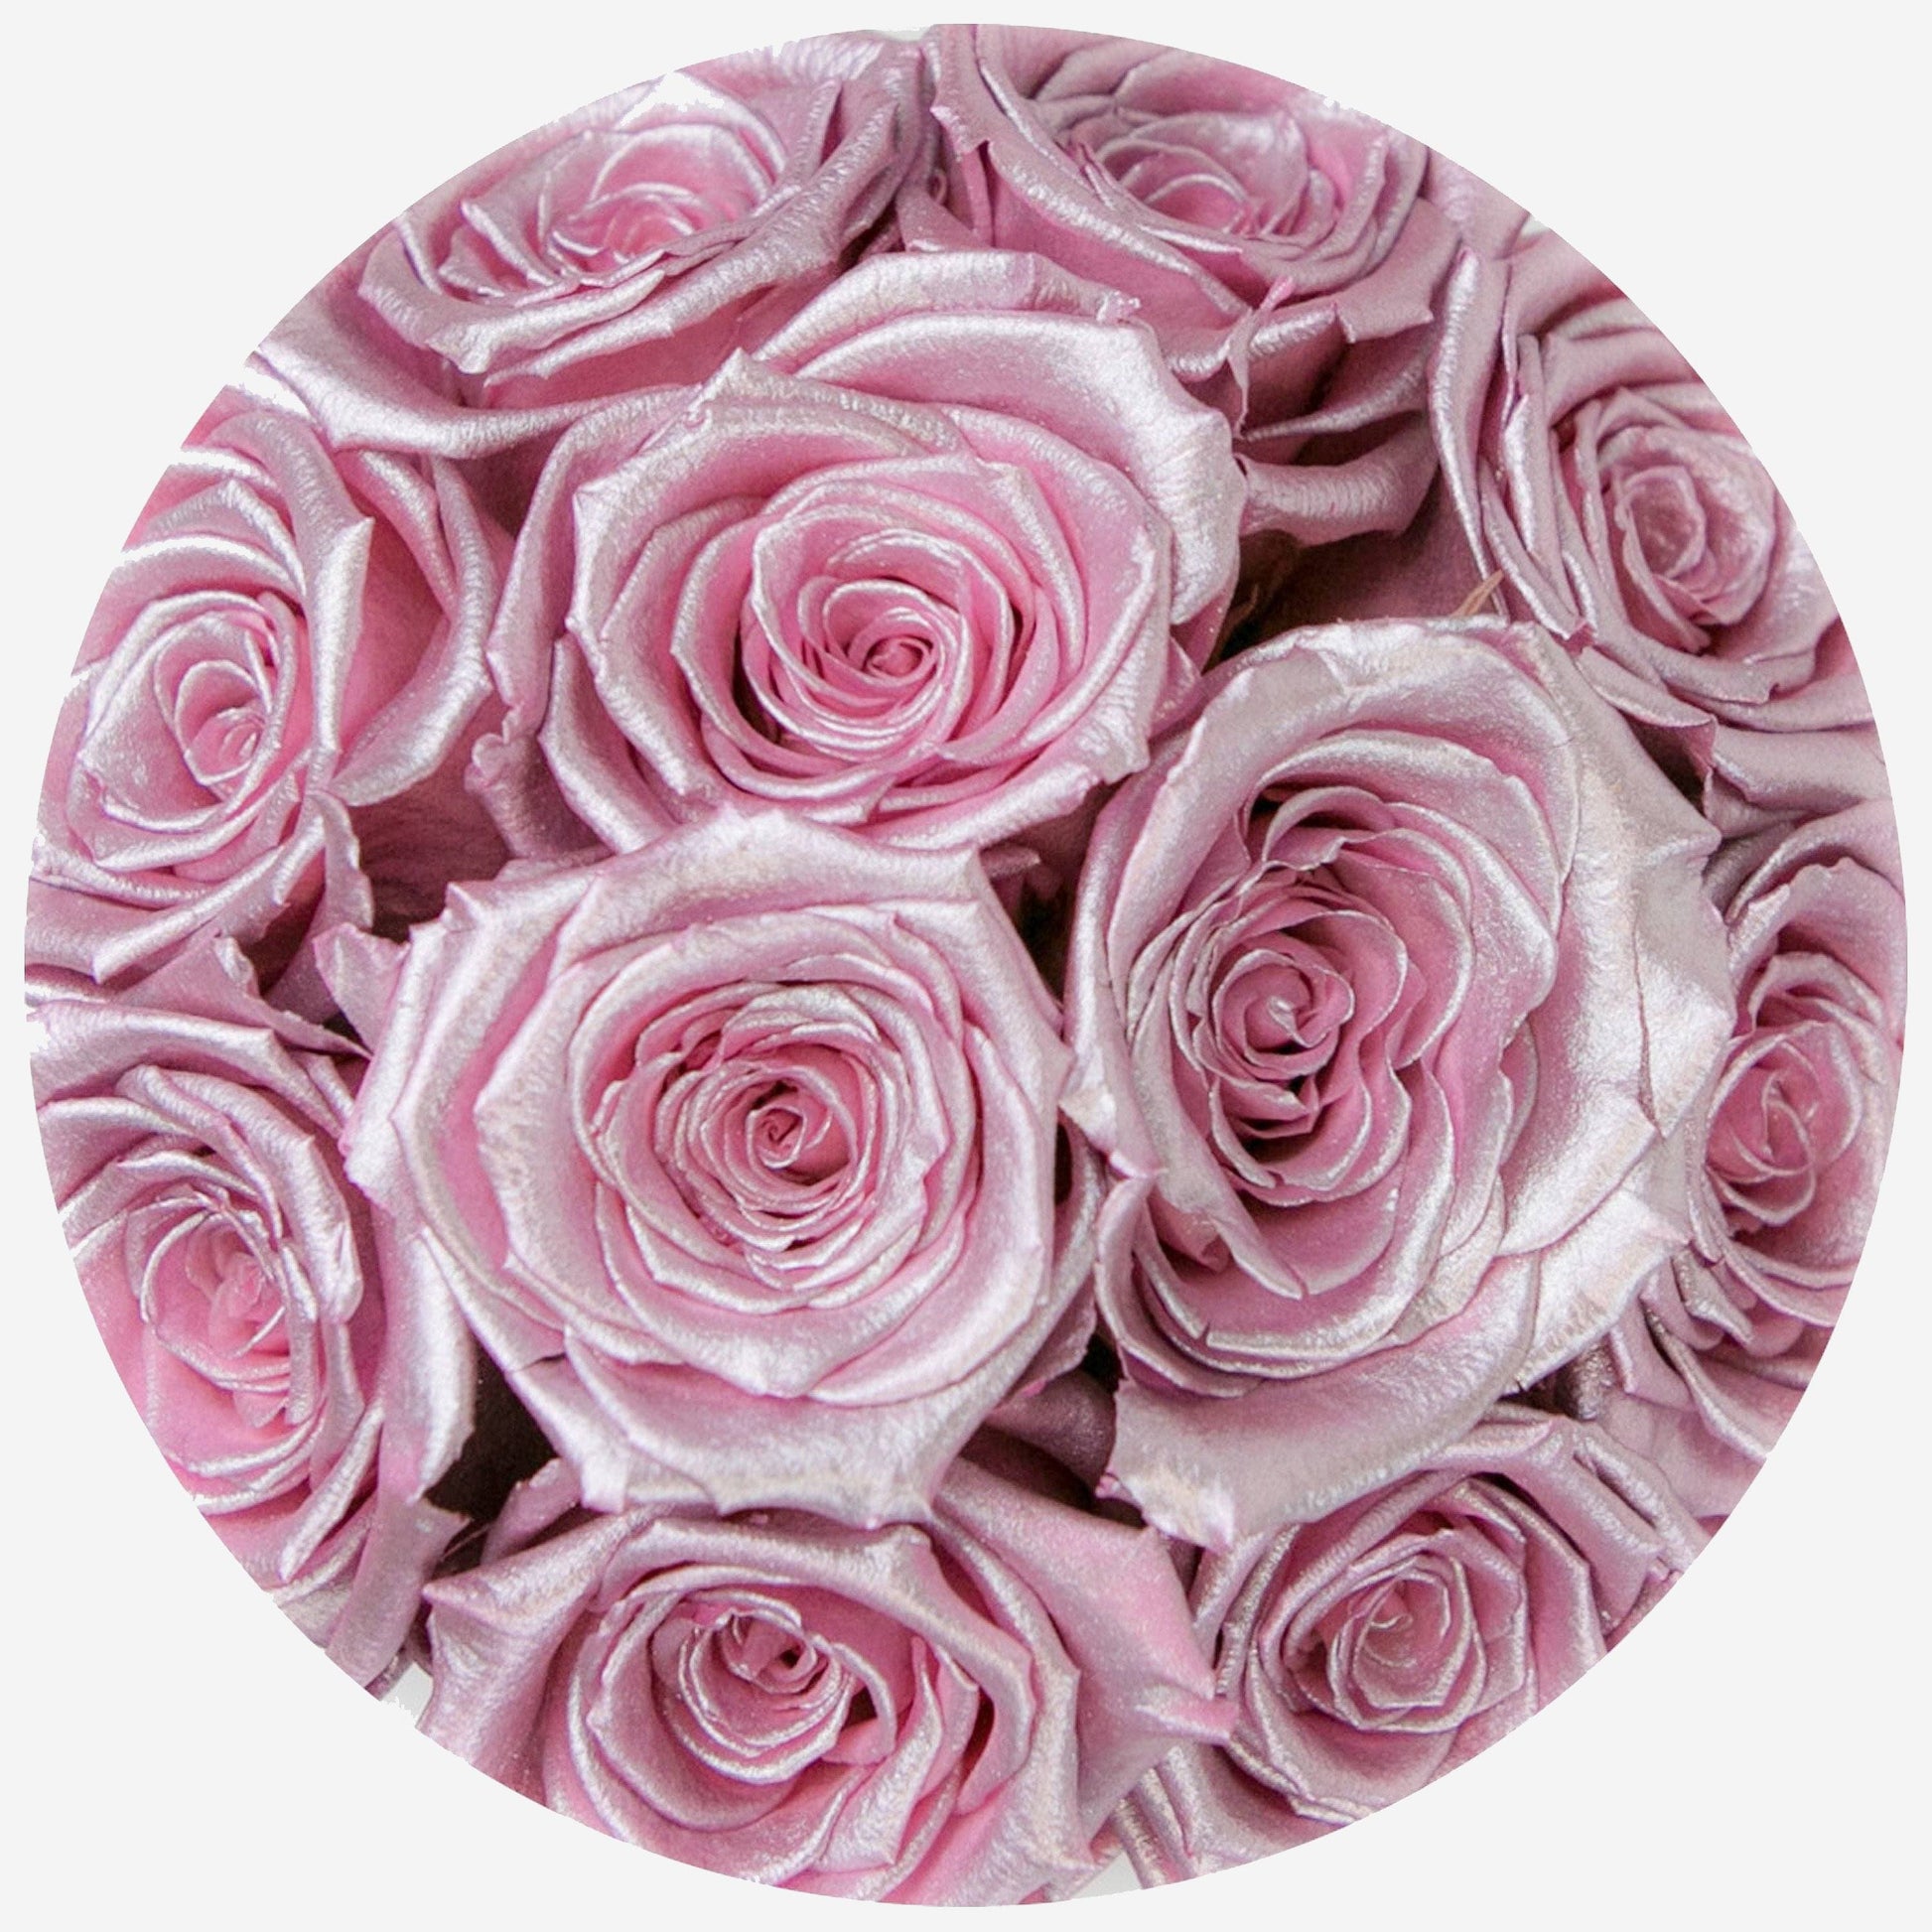 Basic White Box | Pink Gold Roses - The Million Roses